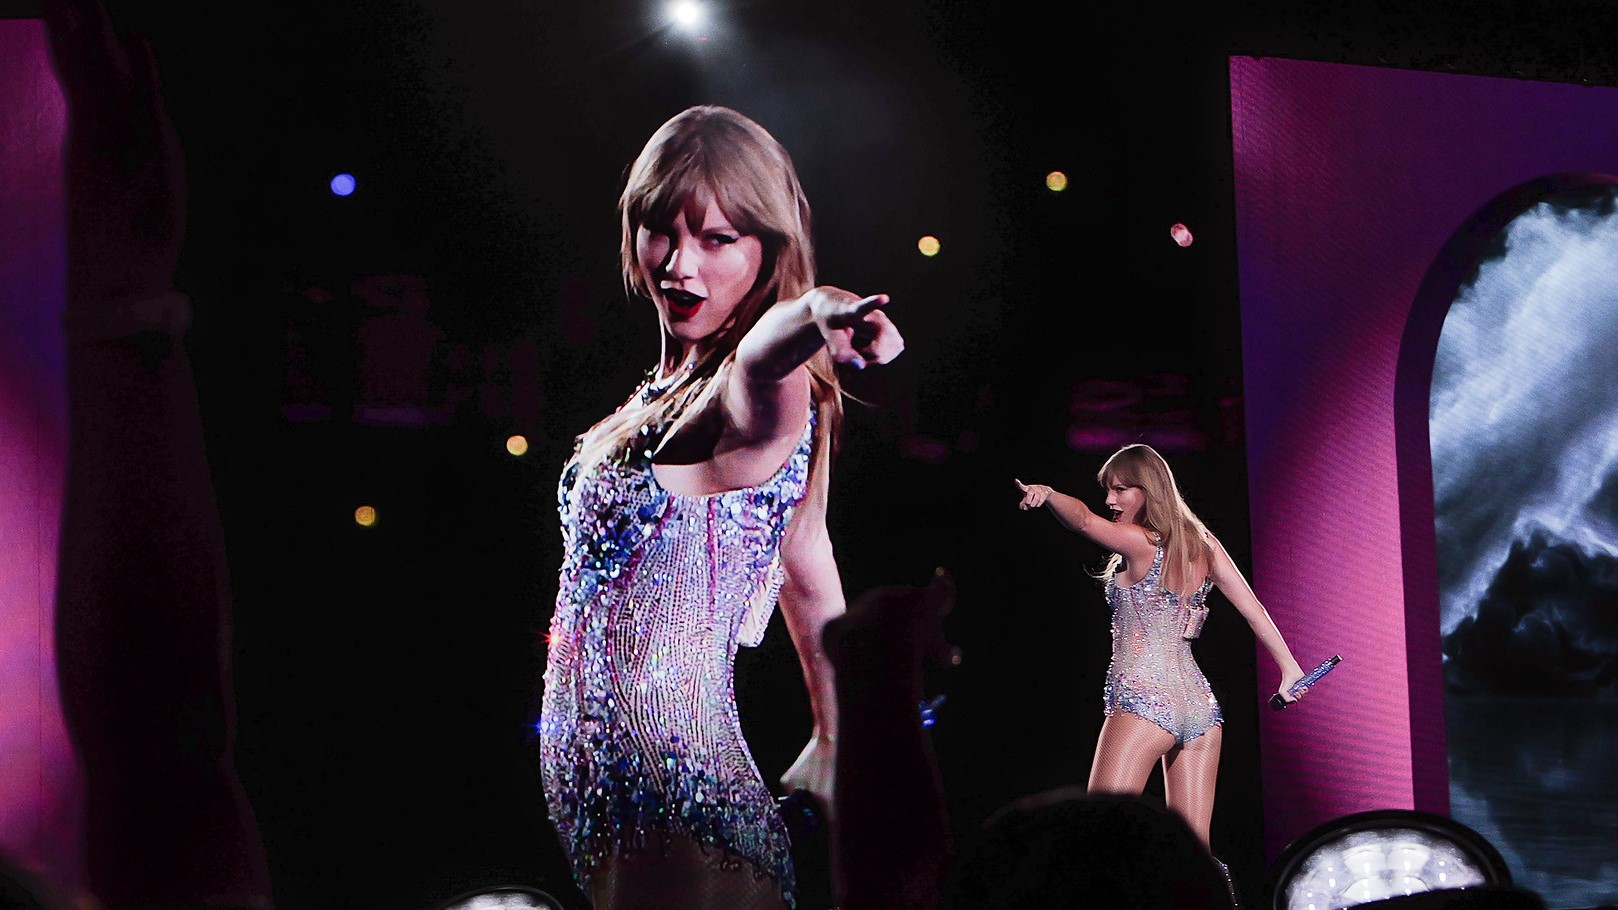 Les deepfakes de Taylor Swift nue sont apparus sur X, ce qui a provoqué la colère des fans de la chanteuse.